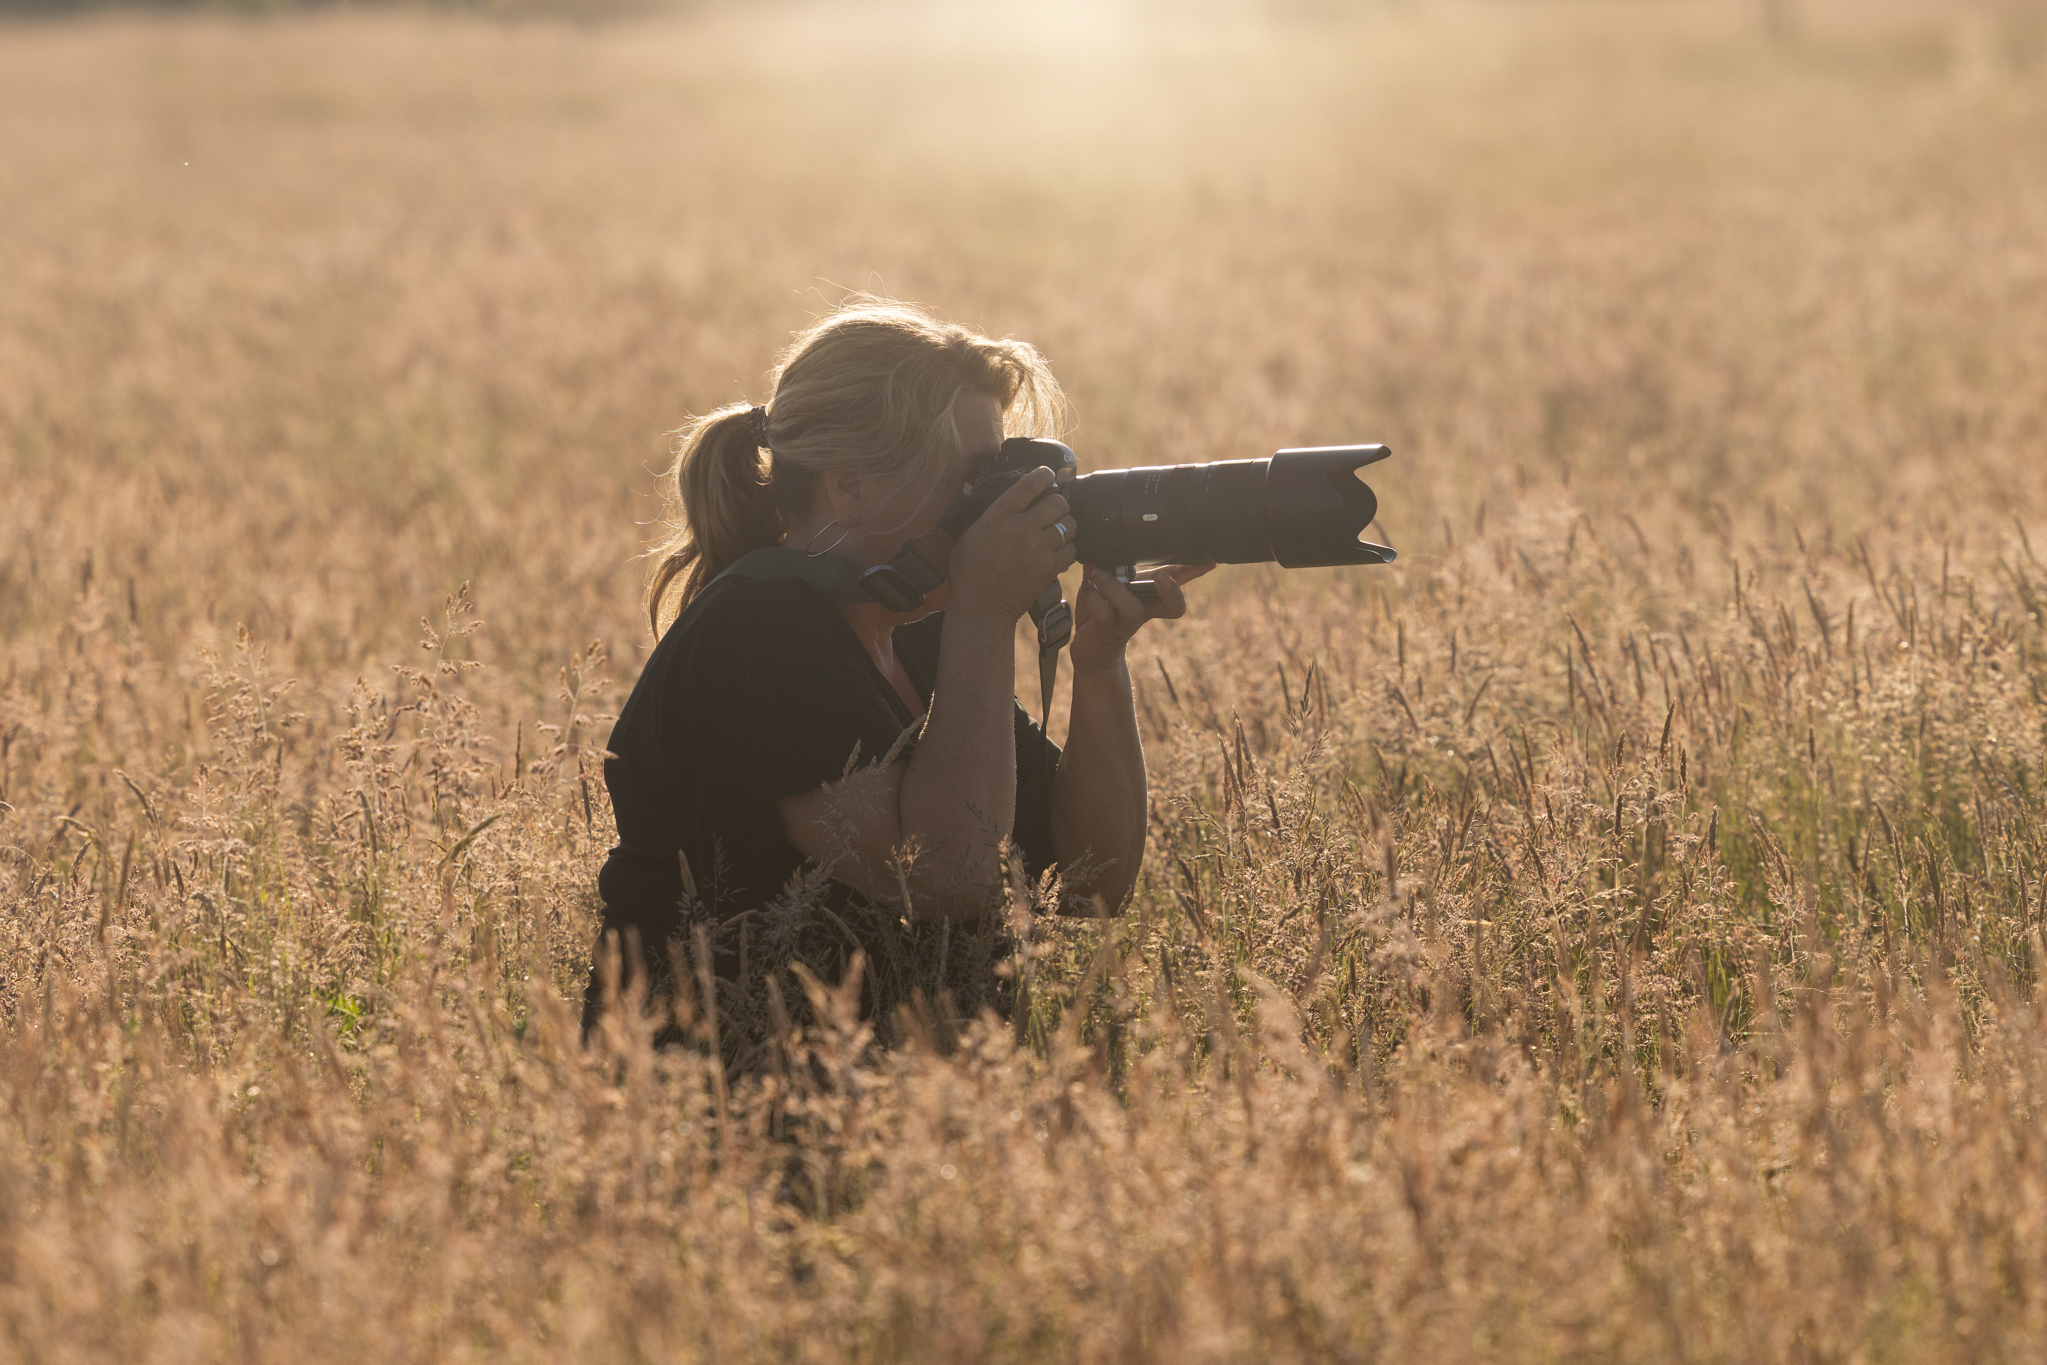 Yvette Eelman de fotograaf van droombeeldfotografie in een korenveld fotograferend tijdens golden hour.